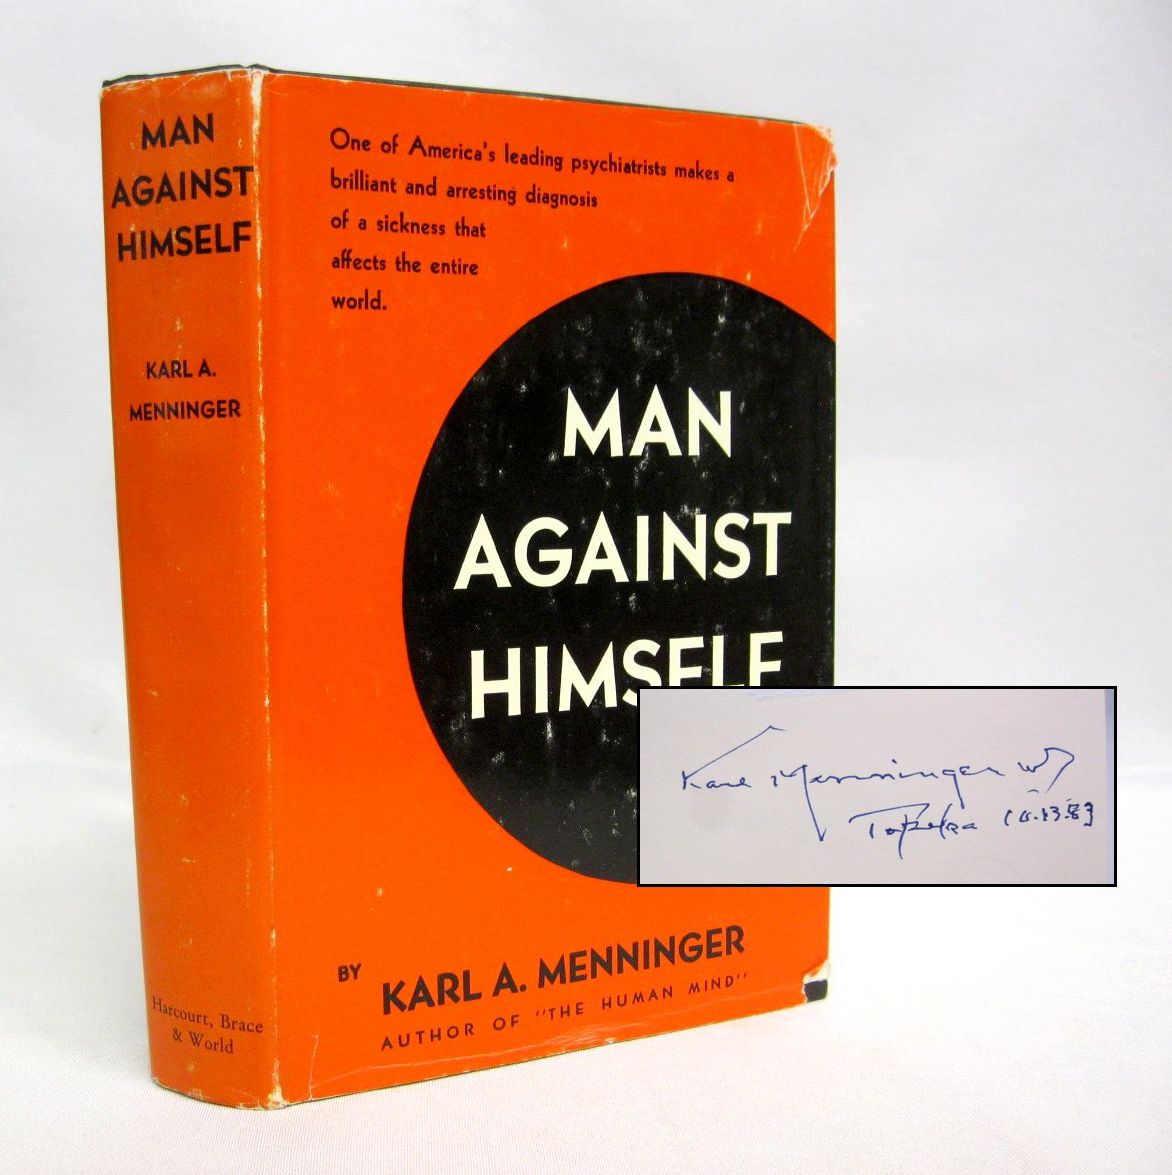 Man Against Himself by Karl A. Menninger